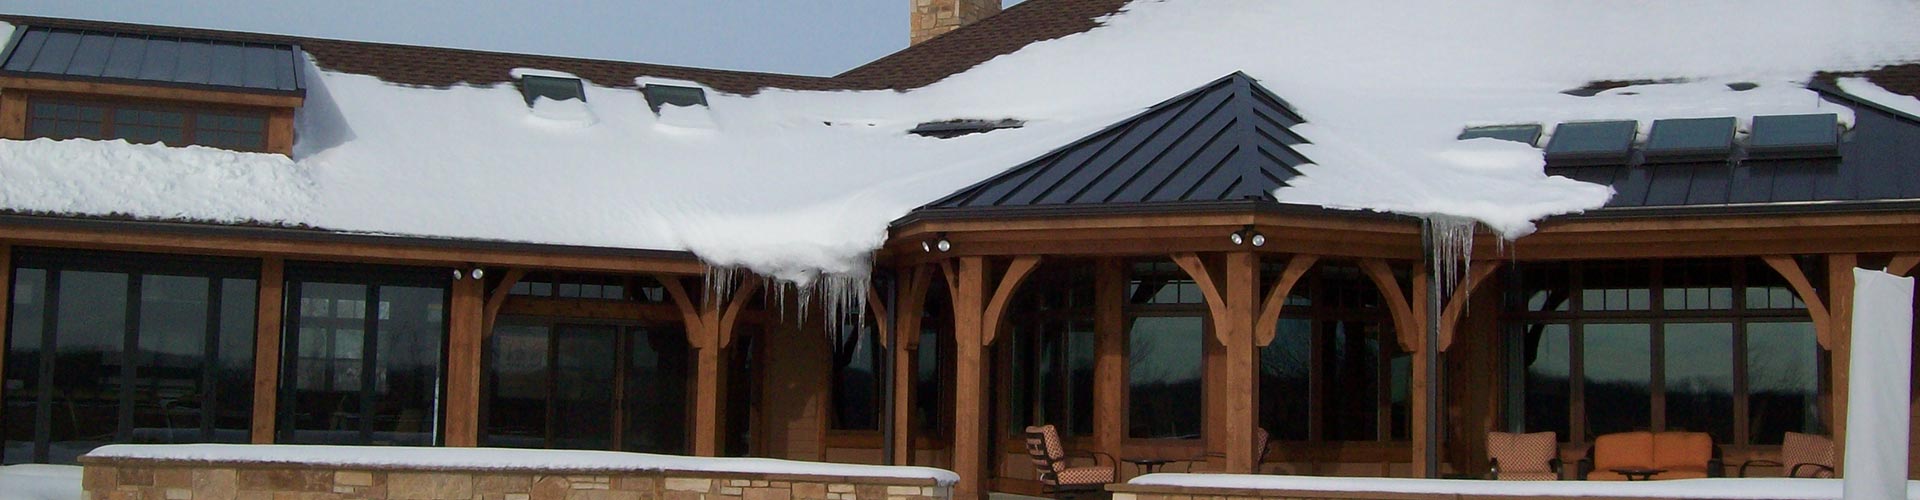 Winter roofing checklist